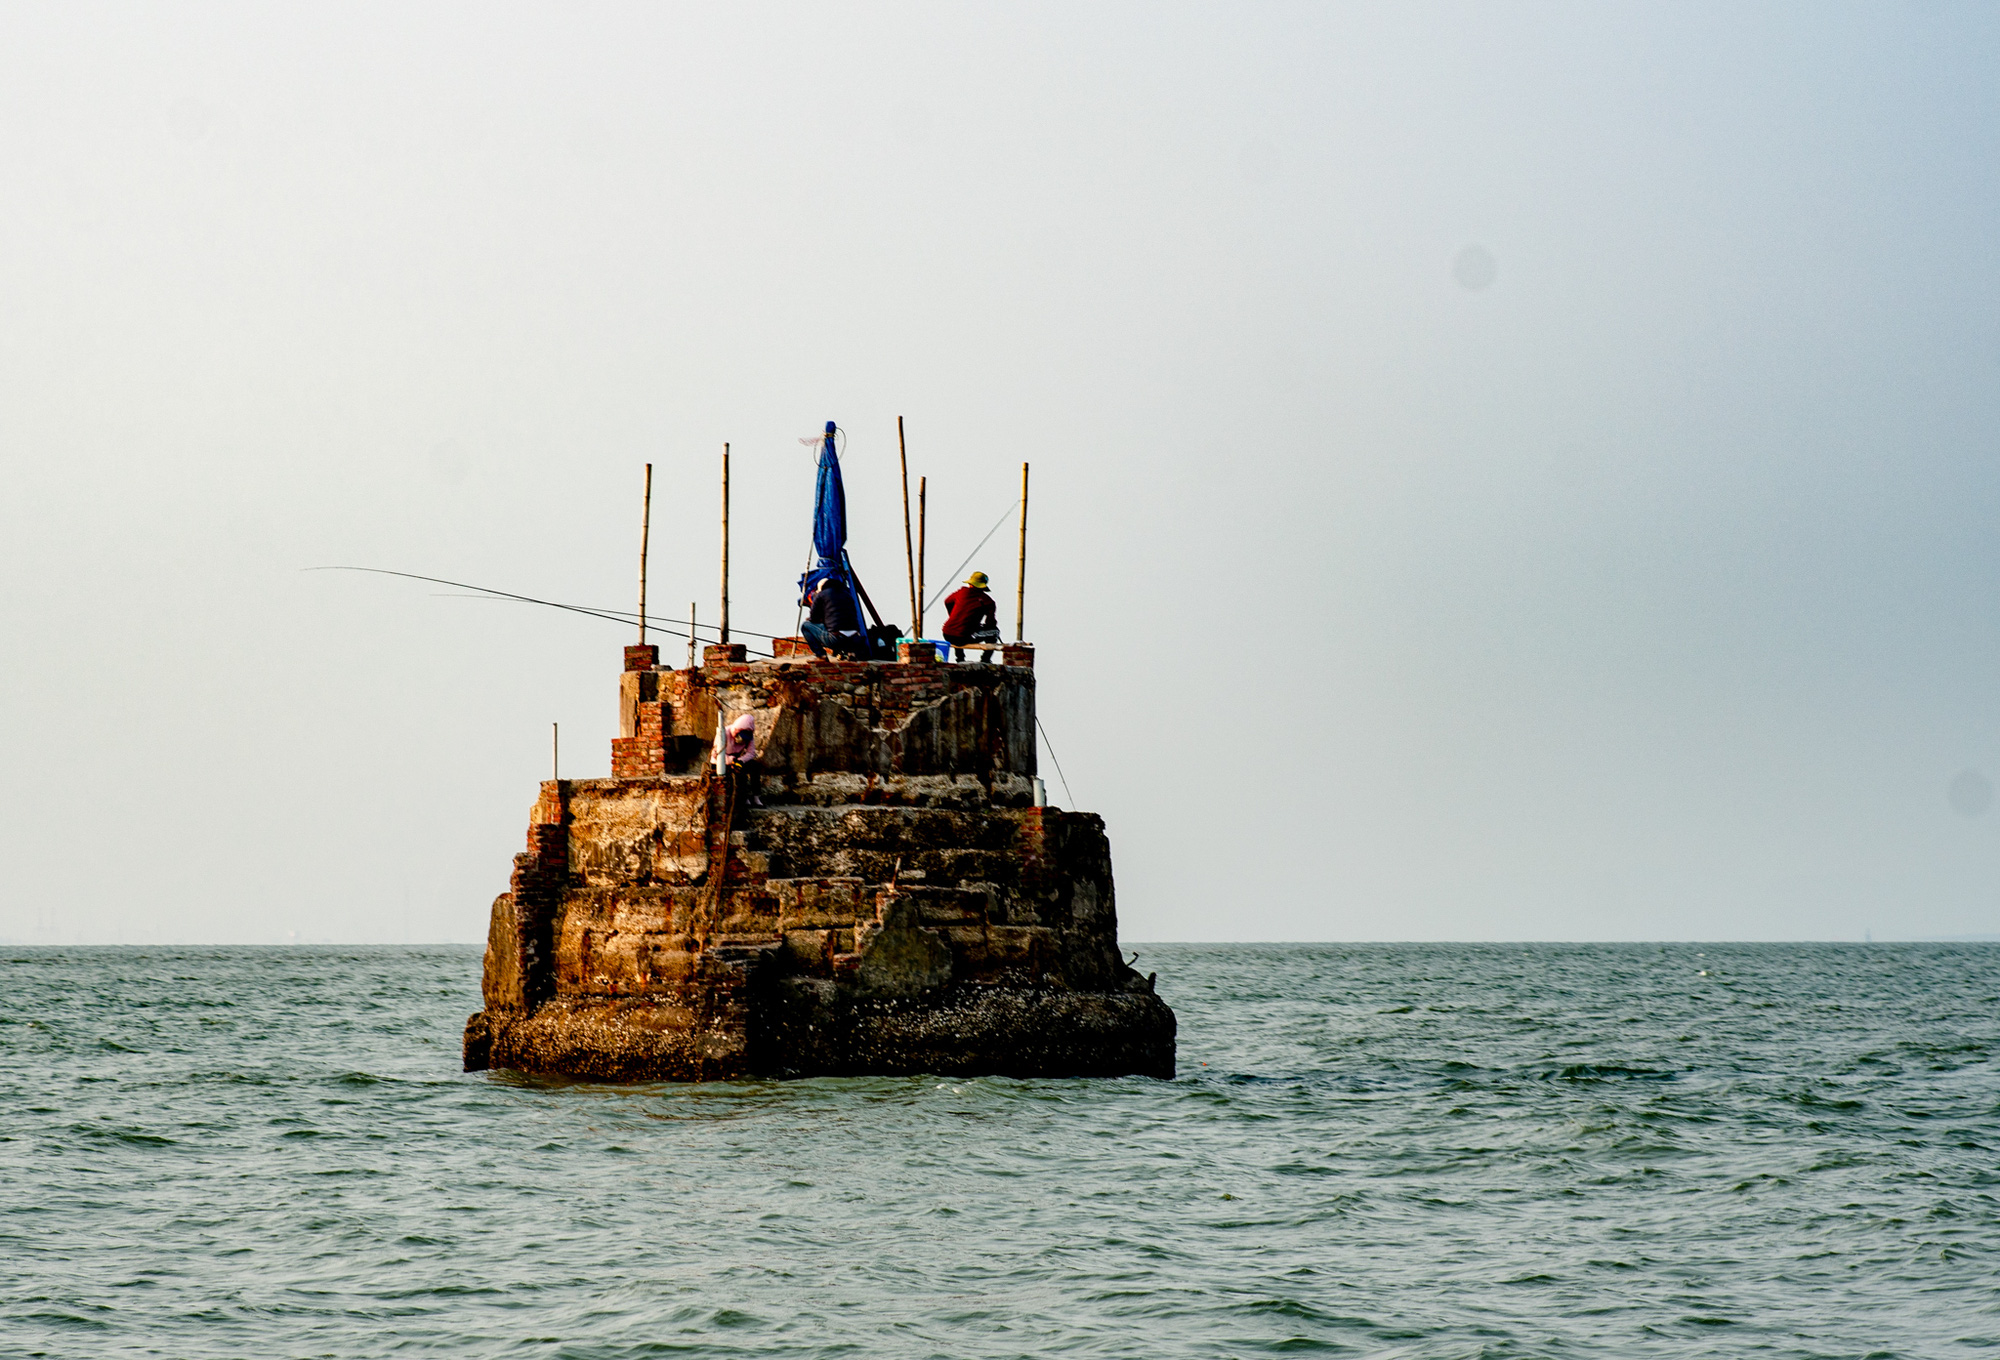  Khám phá đảo bé hạt tiêu có hải đăng cổ nhất Việt Nam, 124 năm vững vàng trước sóng gió - Ảnh 12.